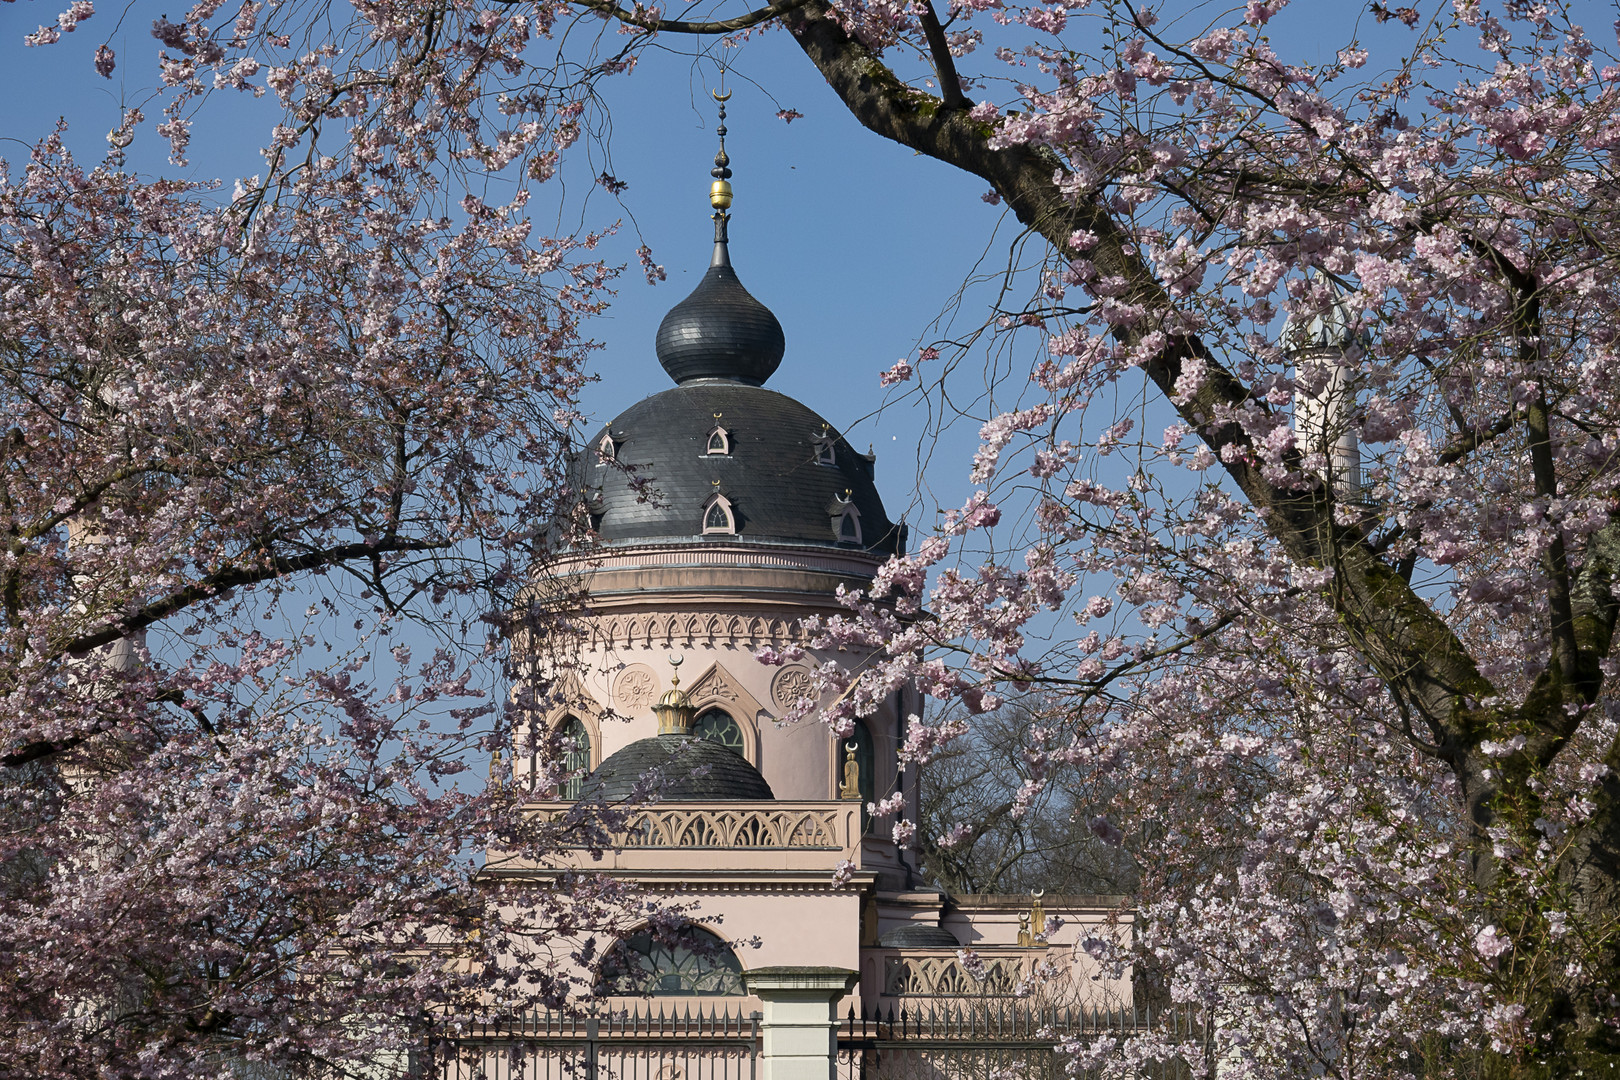 Kirschblüte im Schlosspark Schwetzingen -3-